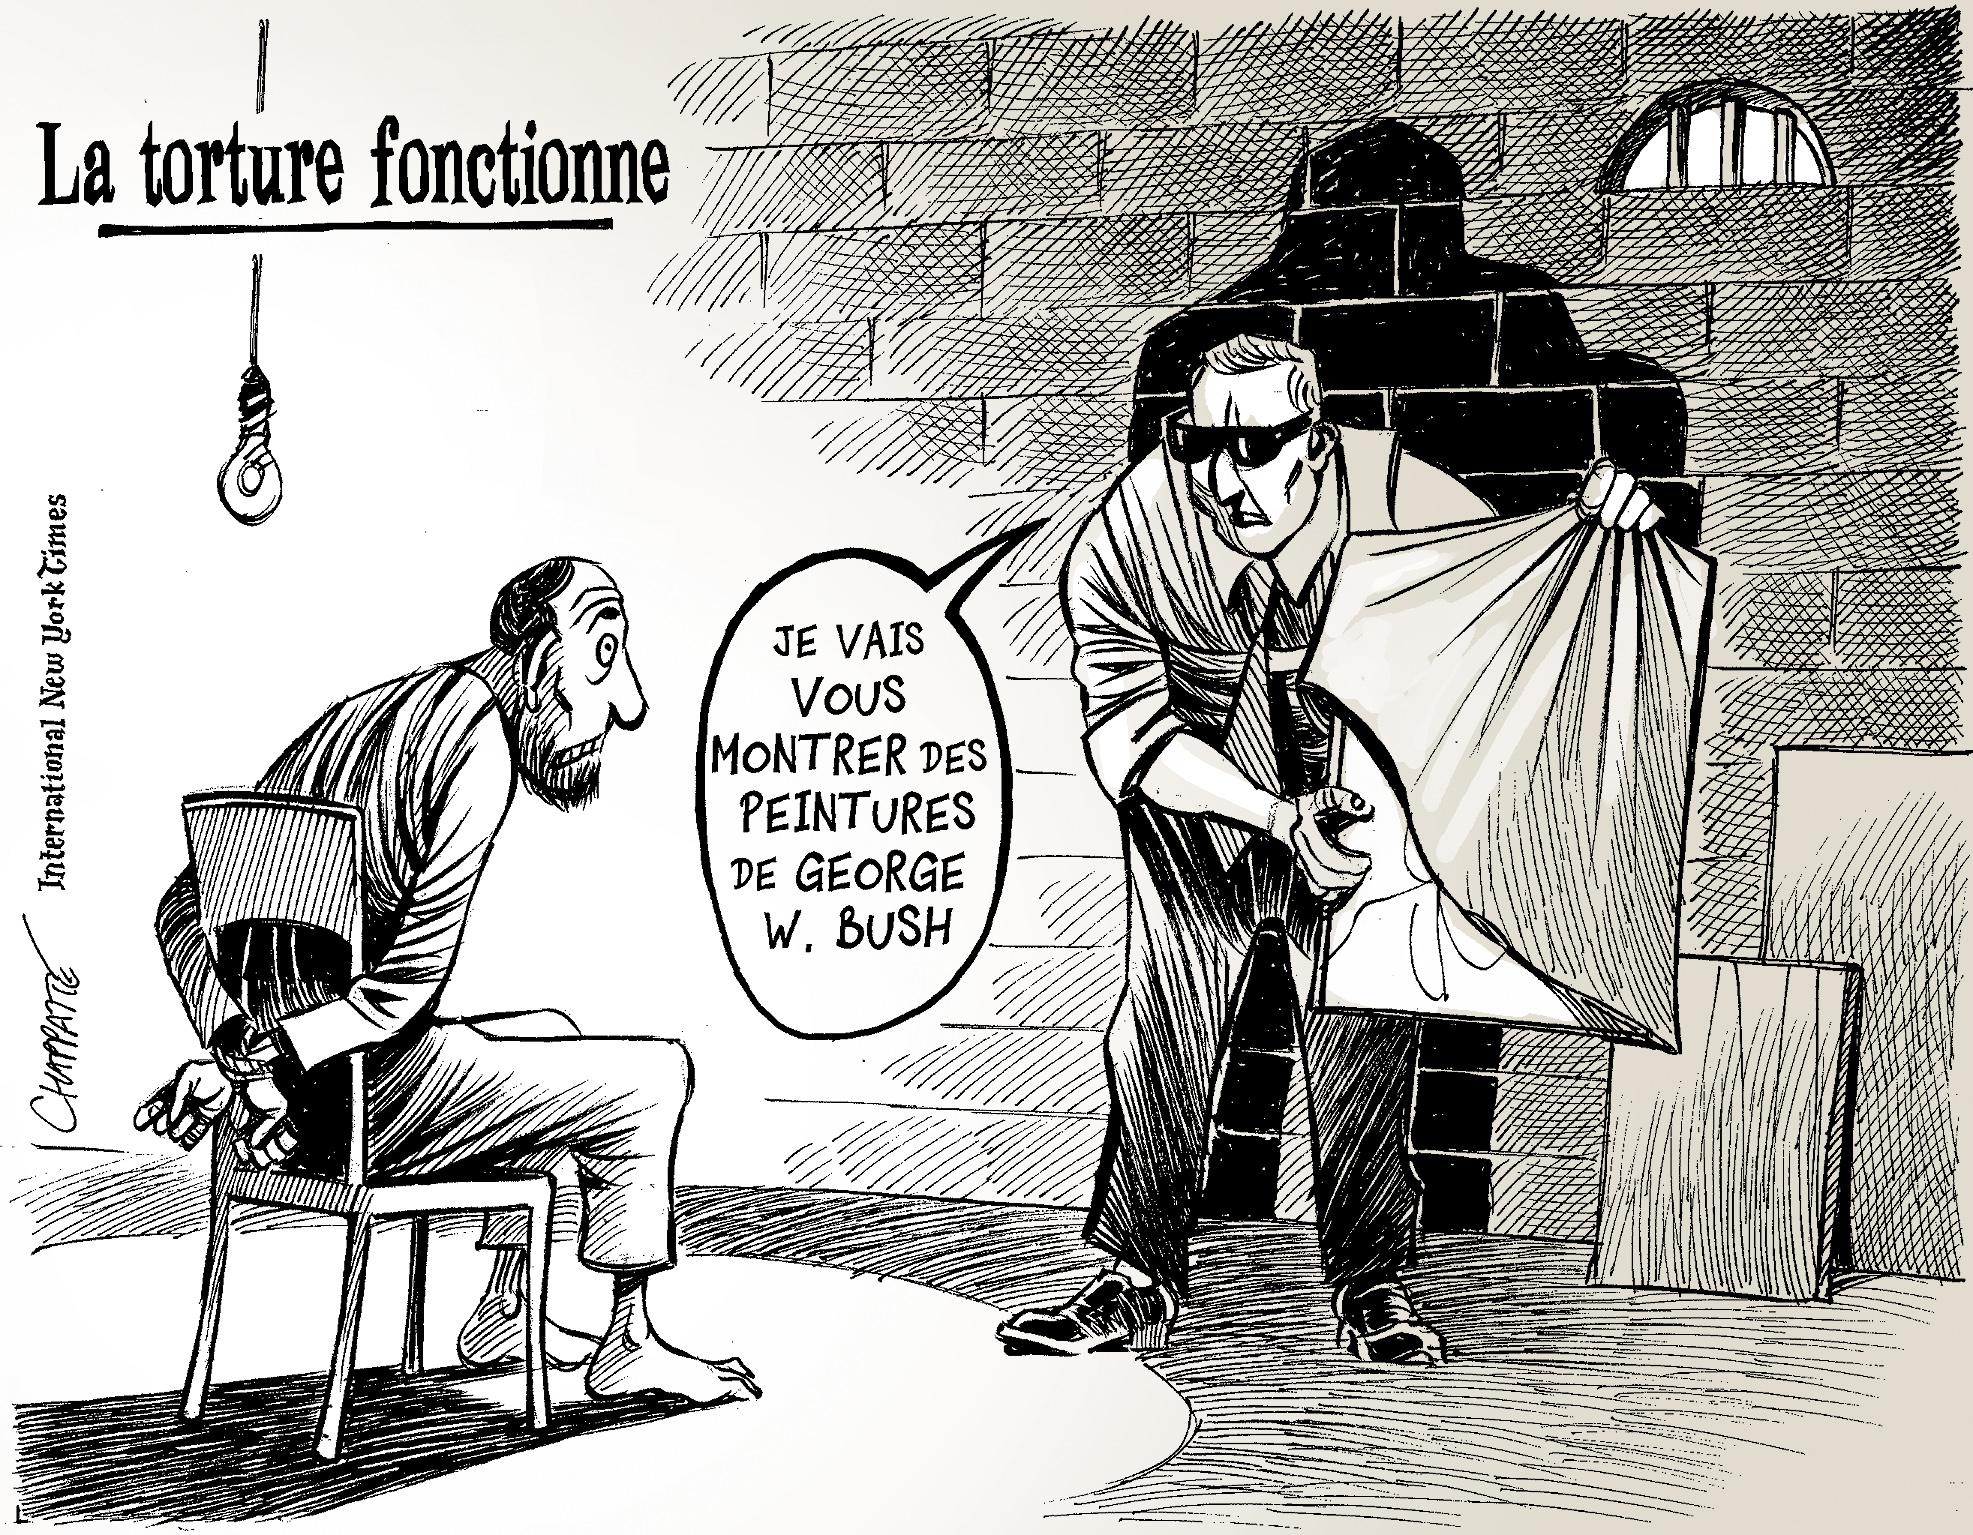 Les USA et la torture